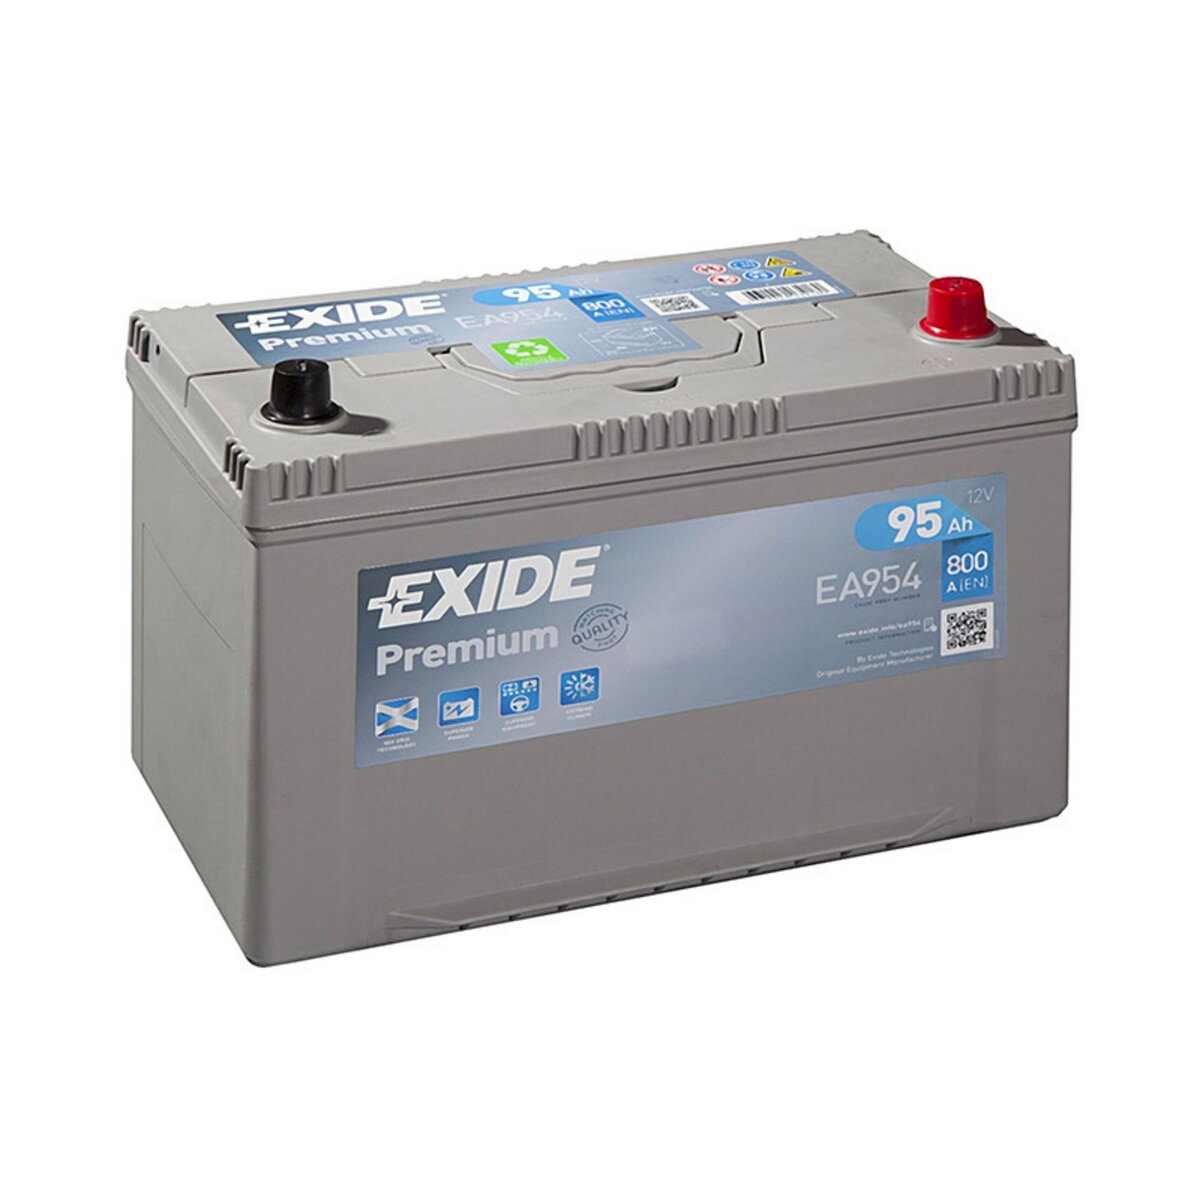 EXIDE AGM EK950 Batterie de Voiture 95Ah 850A Start Stop